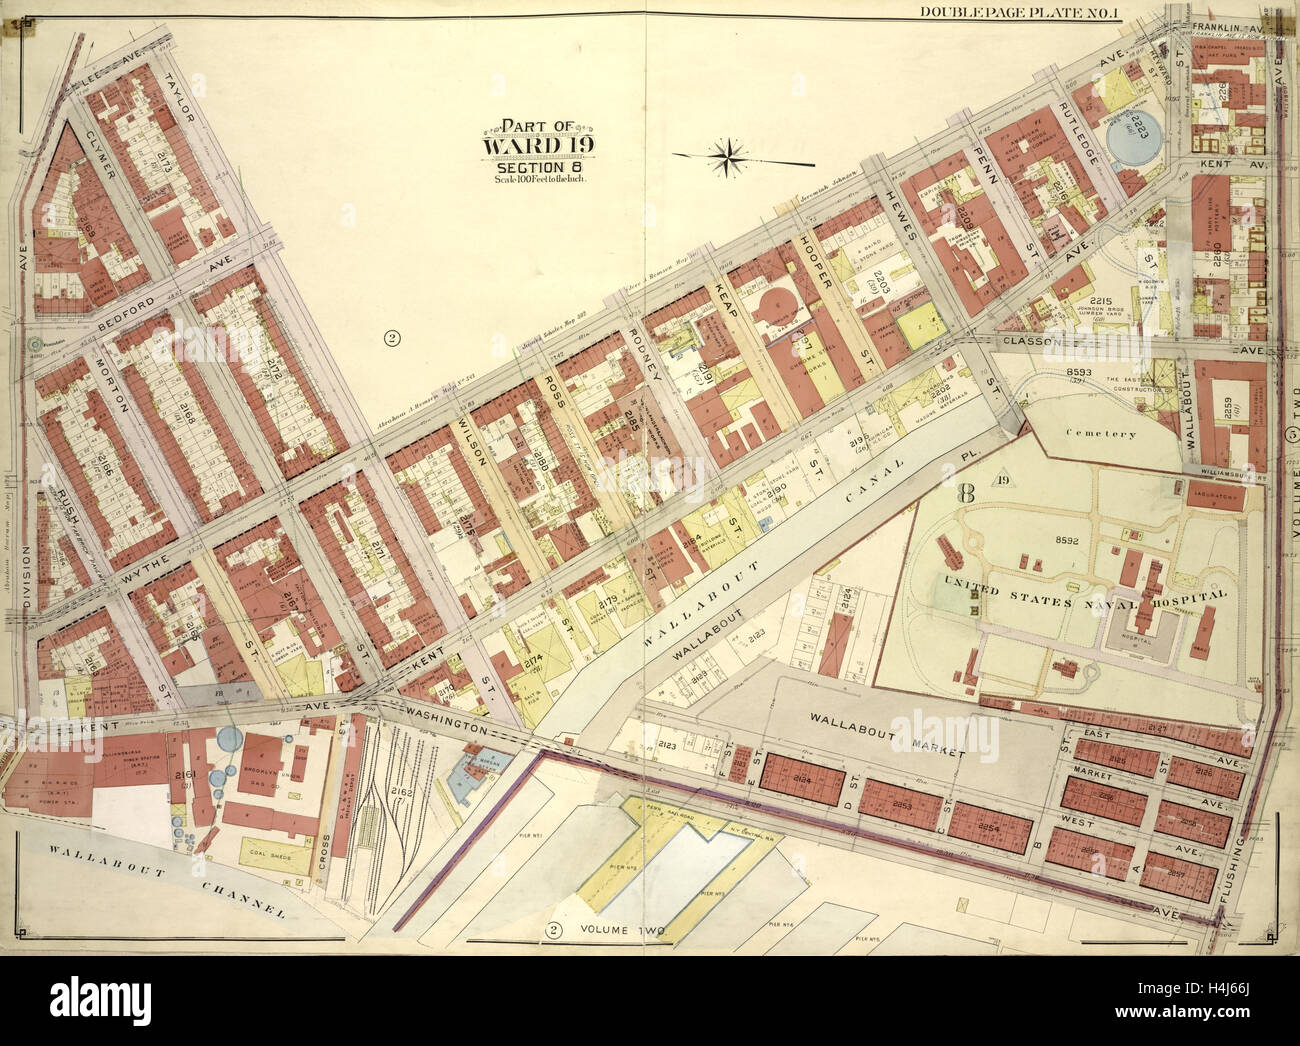 Brooklyn, Bd. 3, doppelte Seite Platte Nr. 1; Teil der Gemeinde 19, Abschnitt 8; Karte von Lee Ave., Taylor St., Wythe Avenue begrenzt Stockfoto